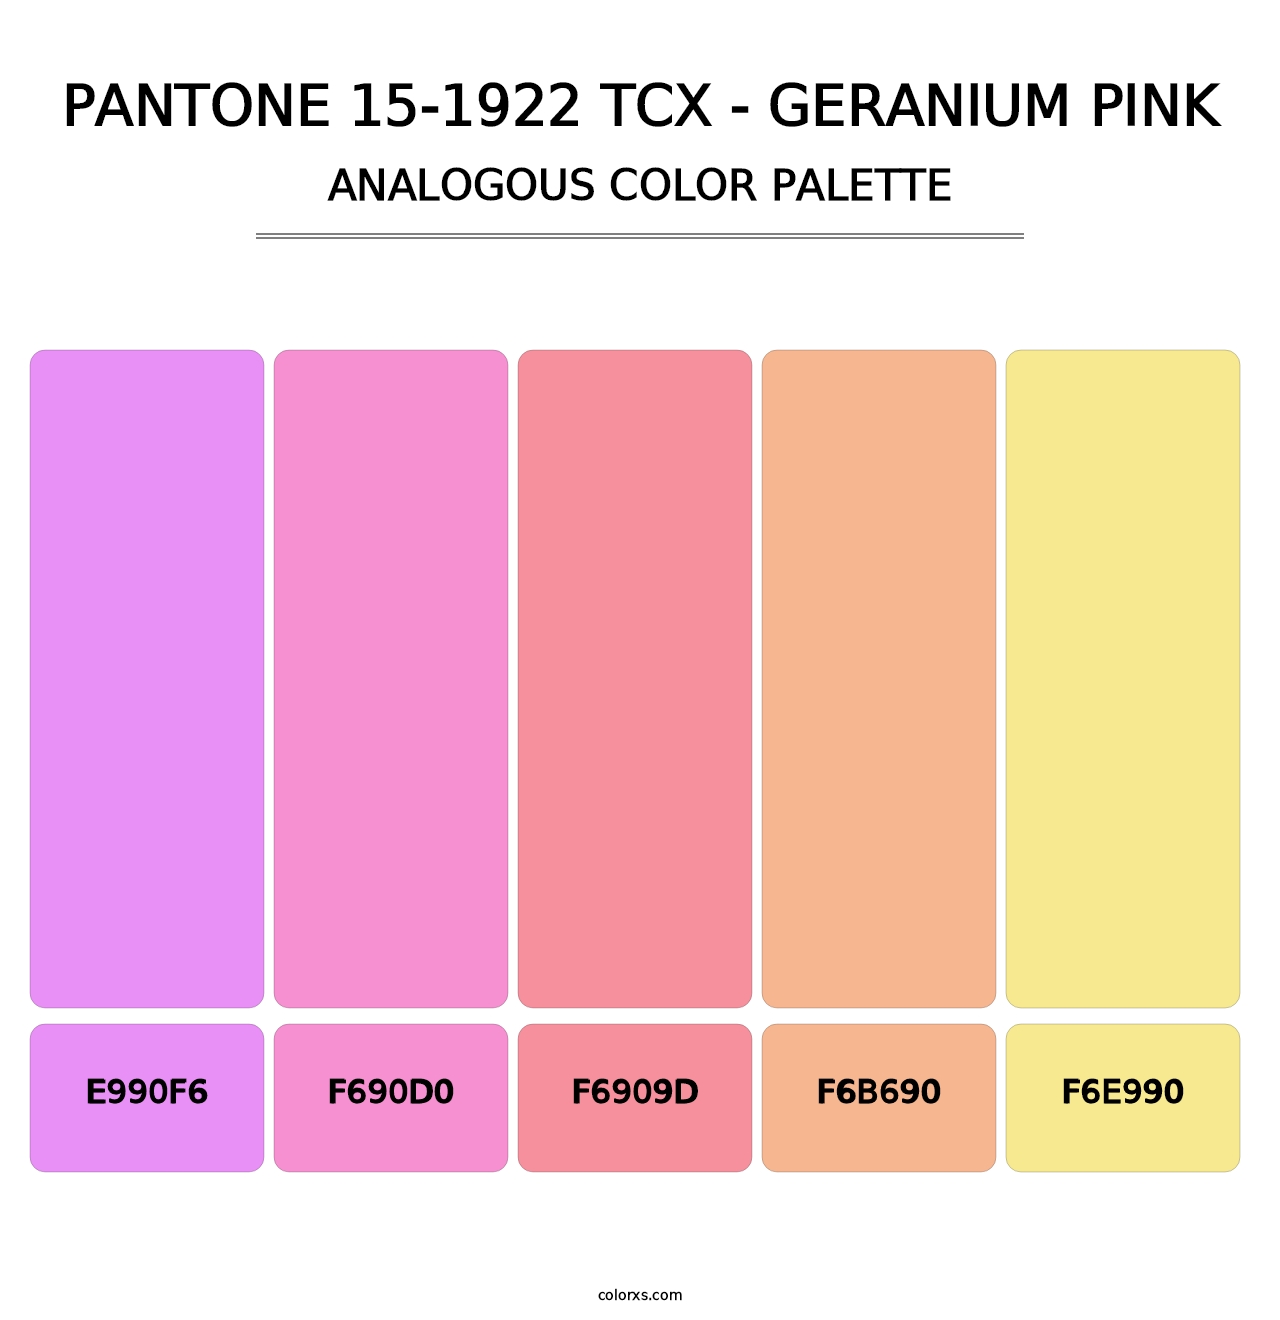 PANTONE 15-1922 TCX - Geranium Pink - Analogous Color Palette